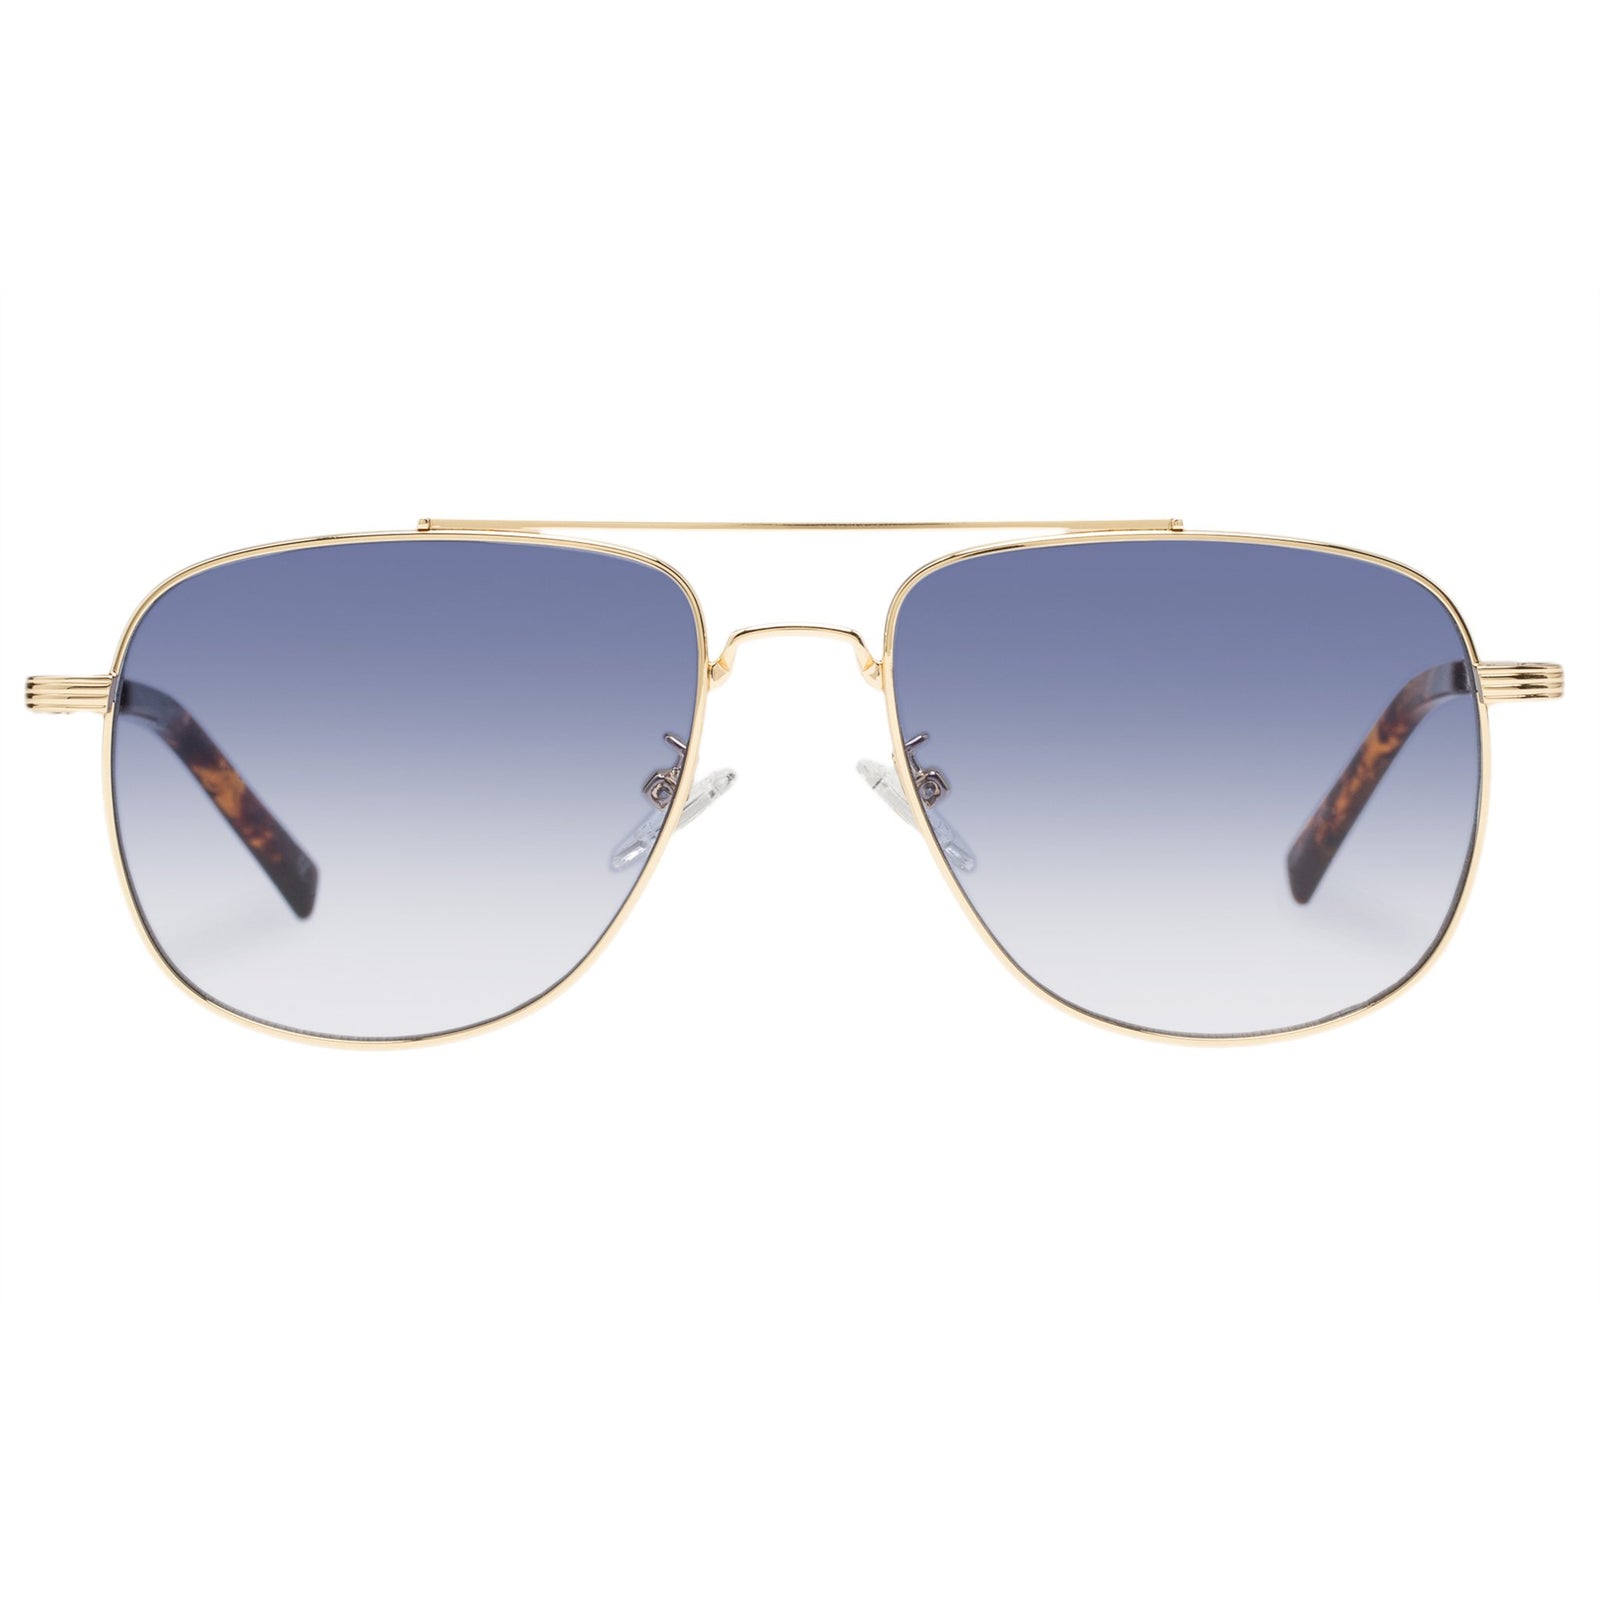 Le Specs The Charmer Sunglasses Bright Gold / Blue Grad